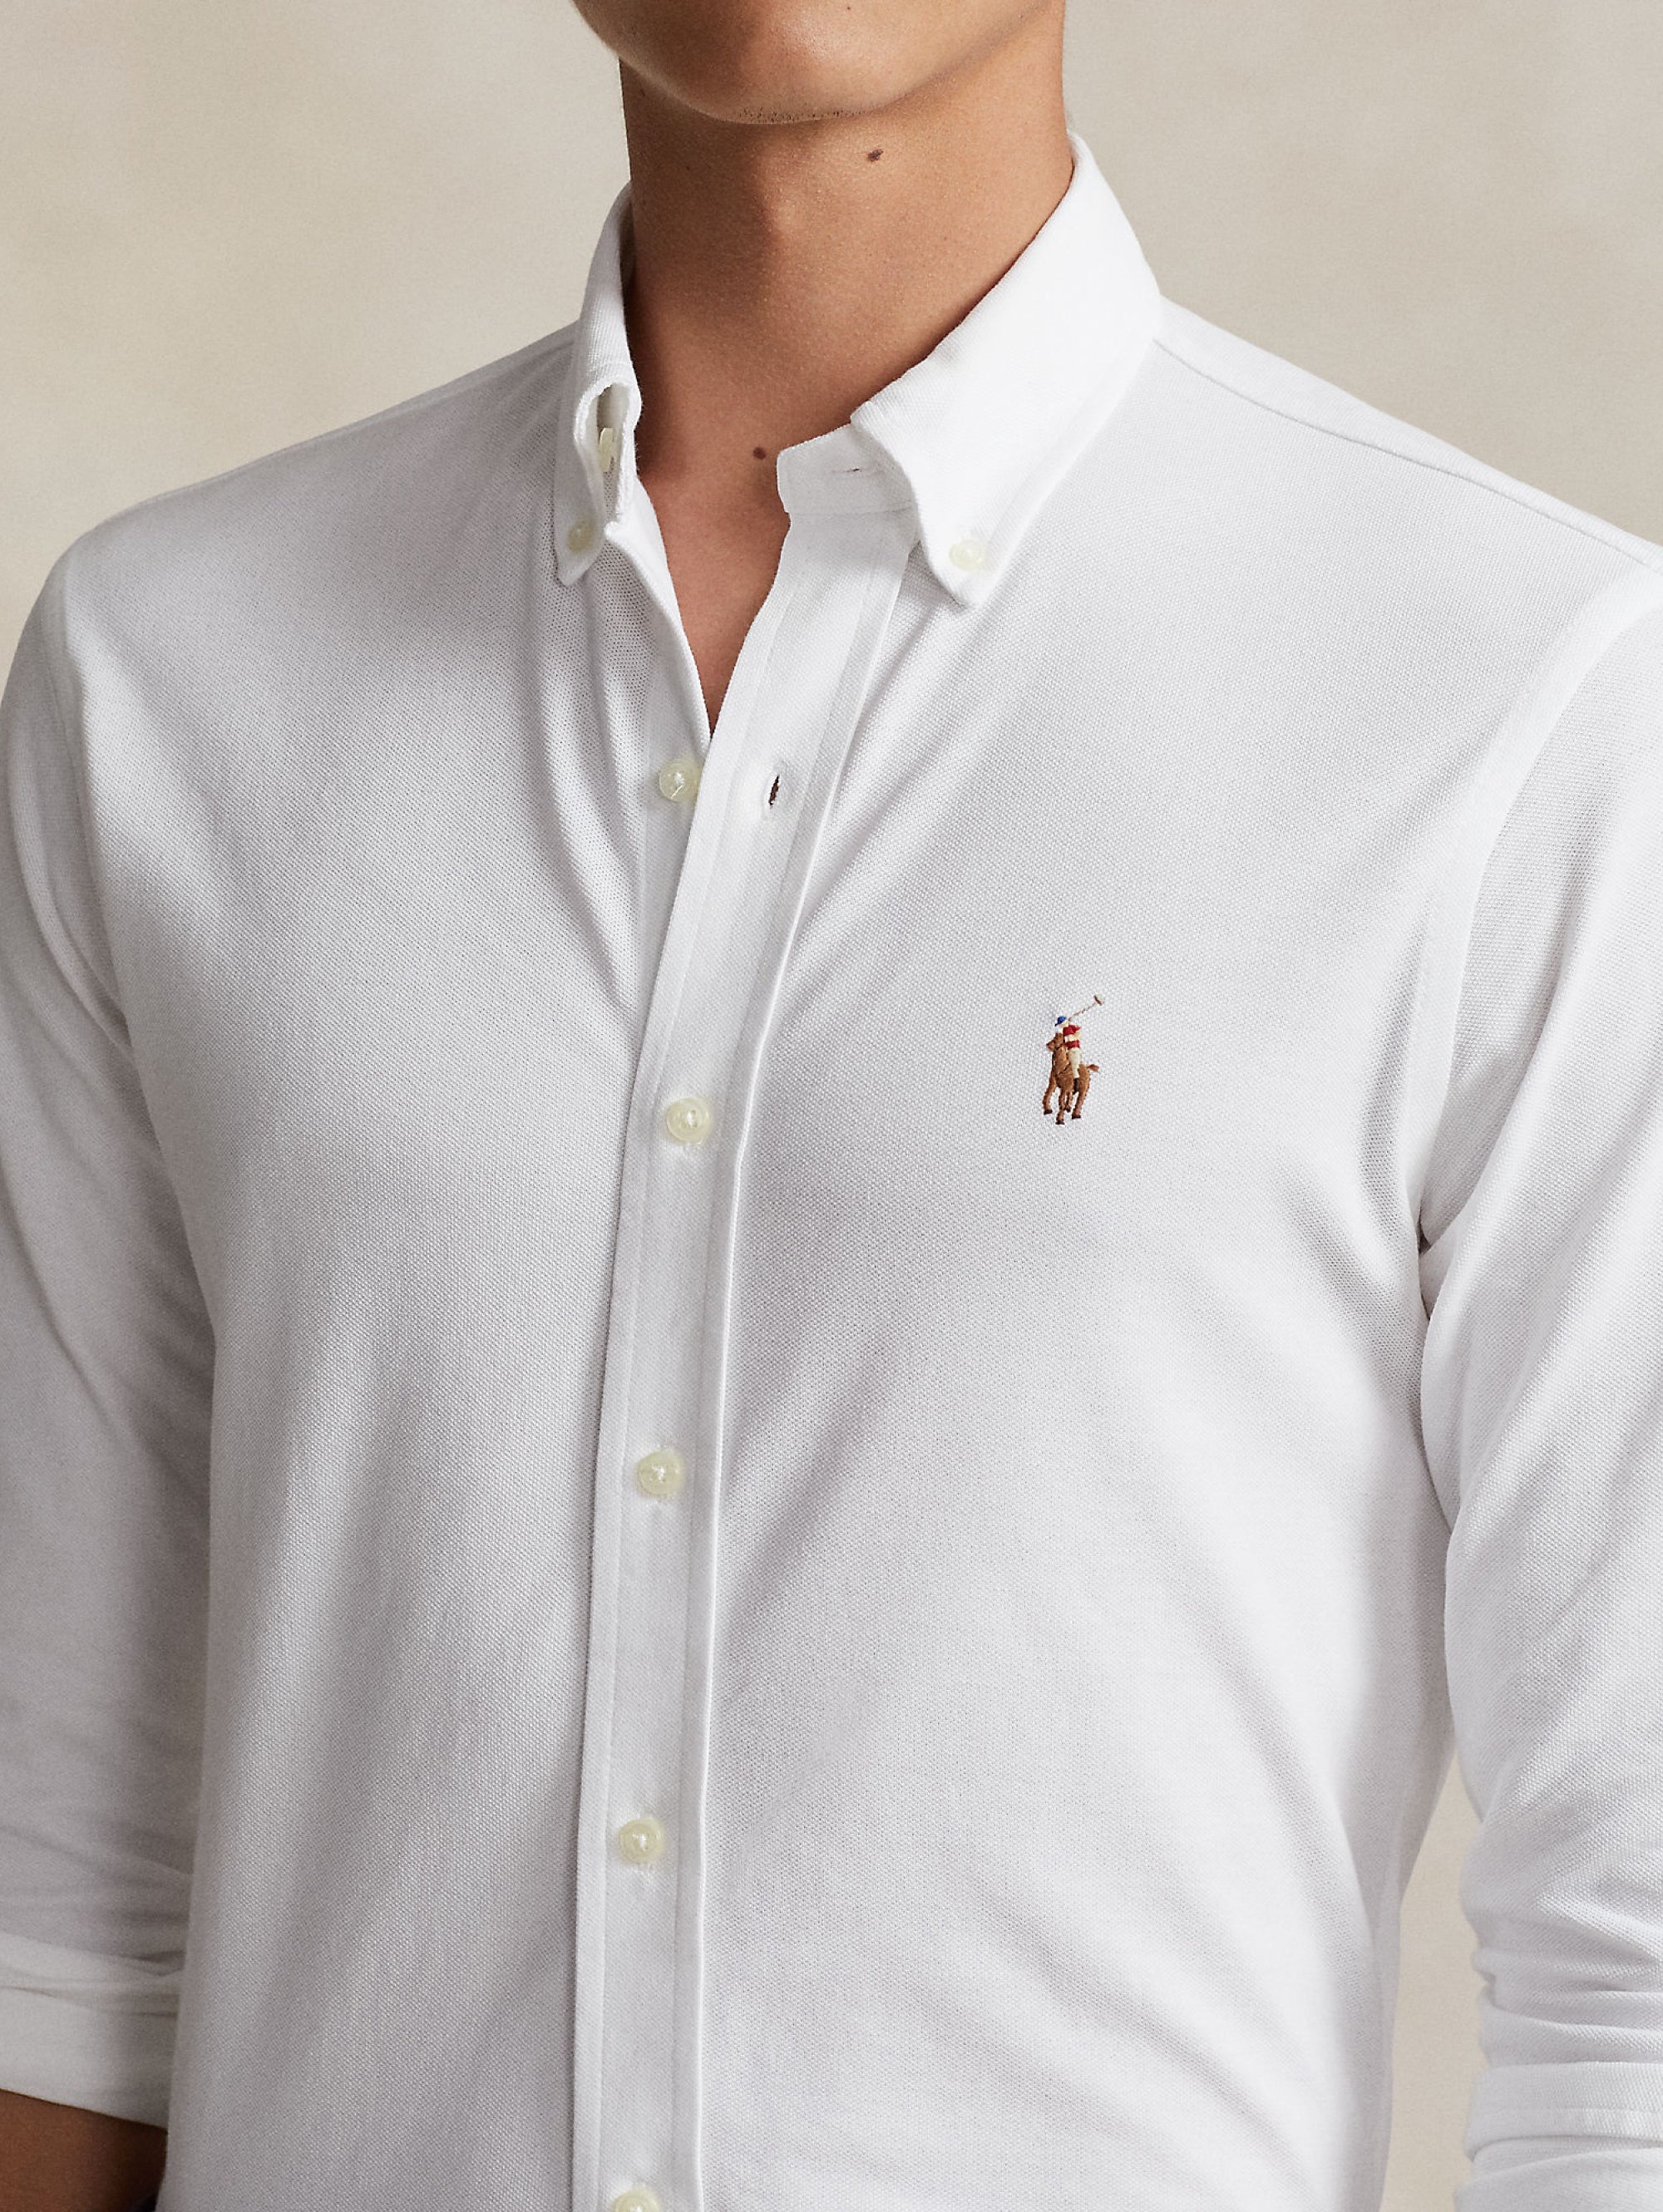 White Oxford Knit Shirt